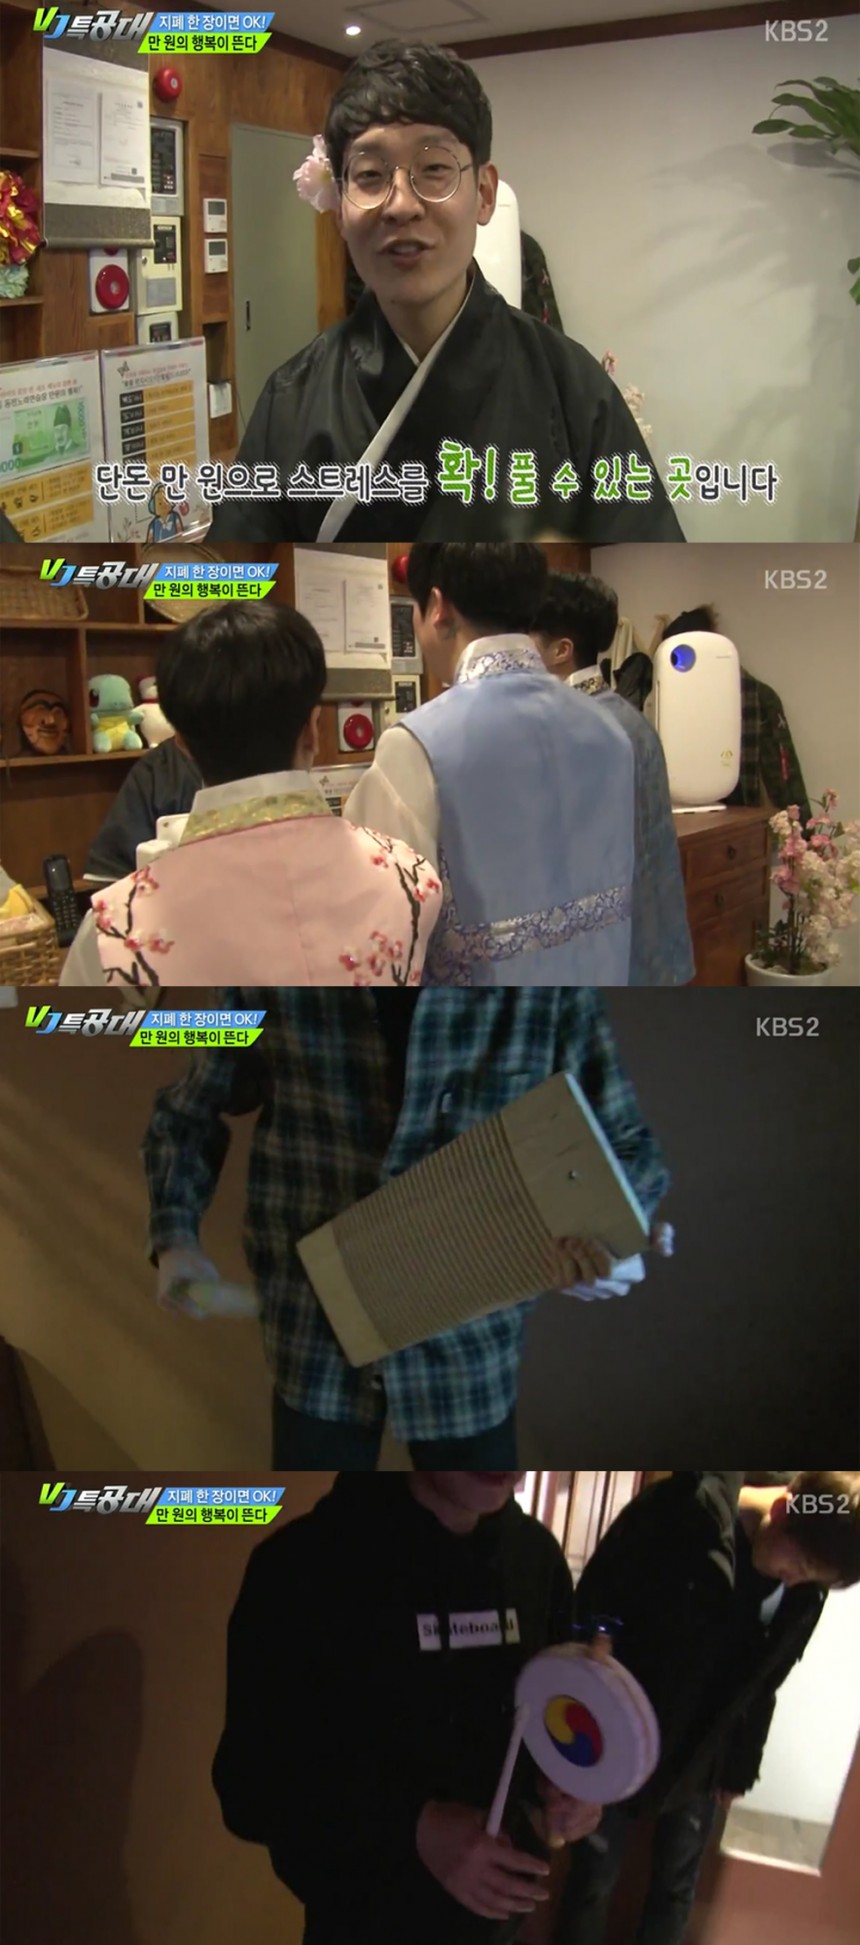 VJ특공대 ‘홍길 동전노래방’ / KBS2 ‘VJ 특공대’ 방송캡쳐